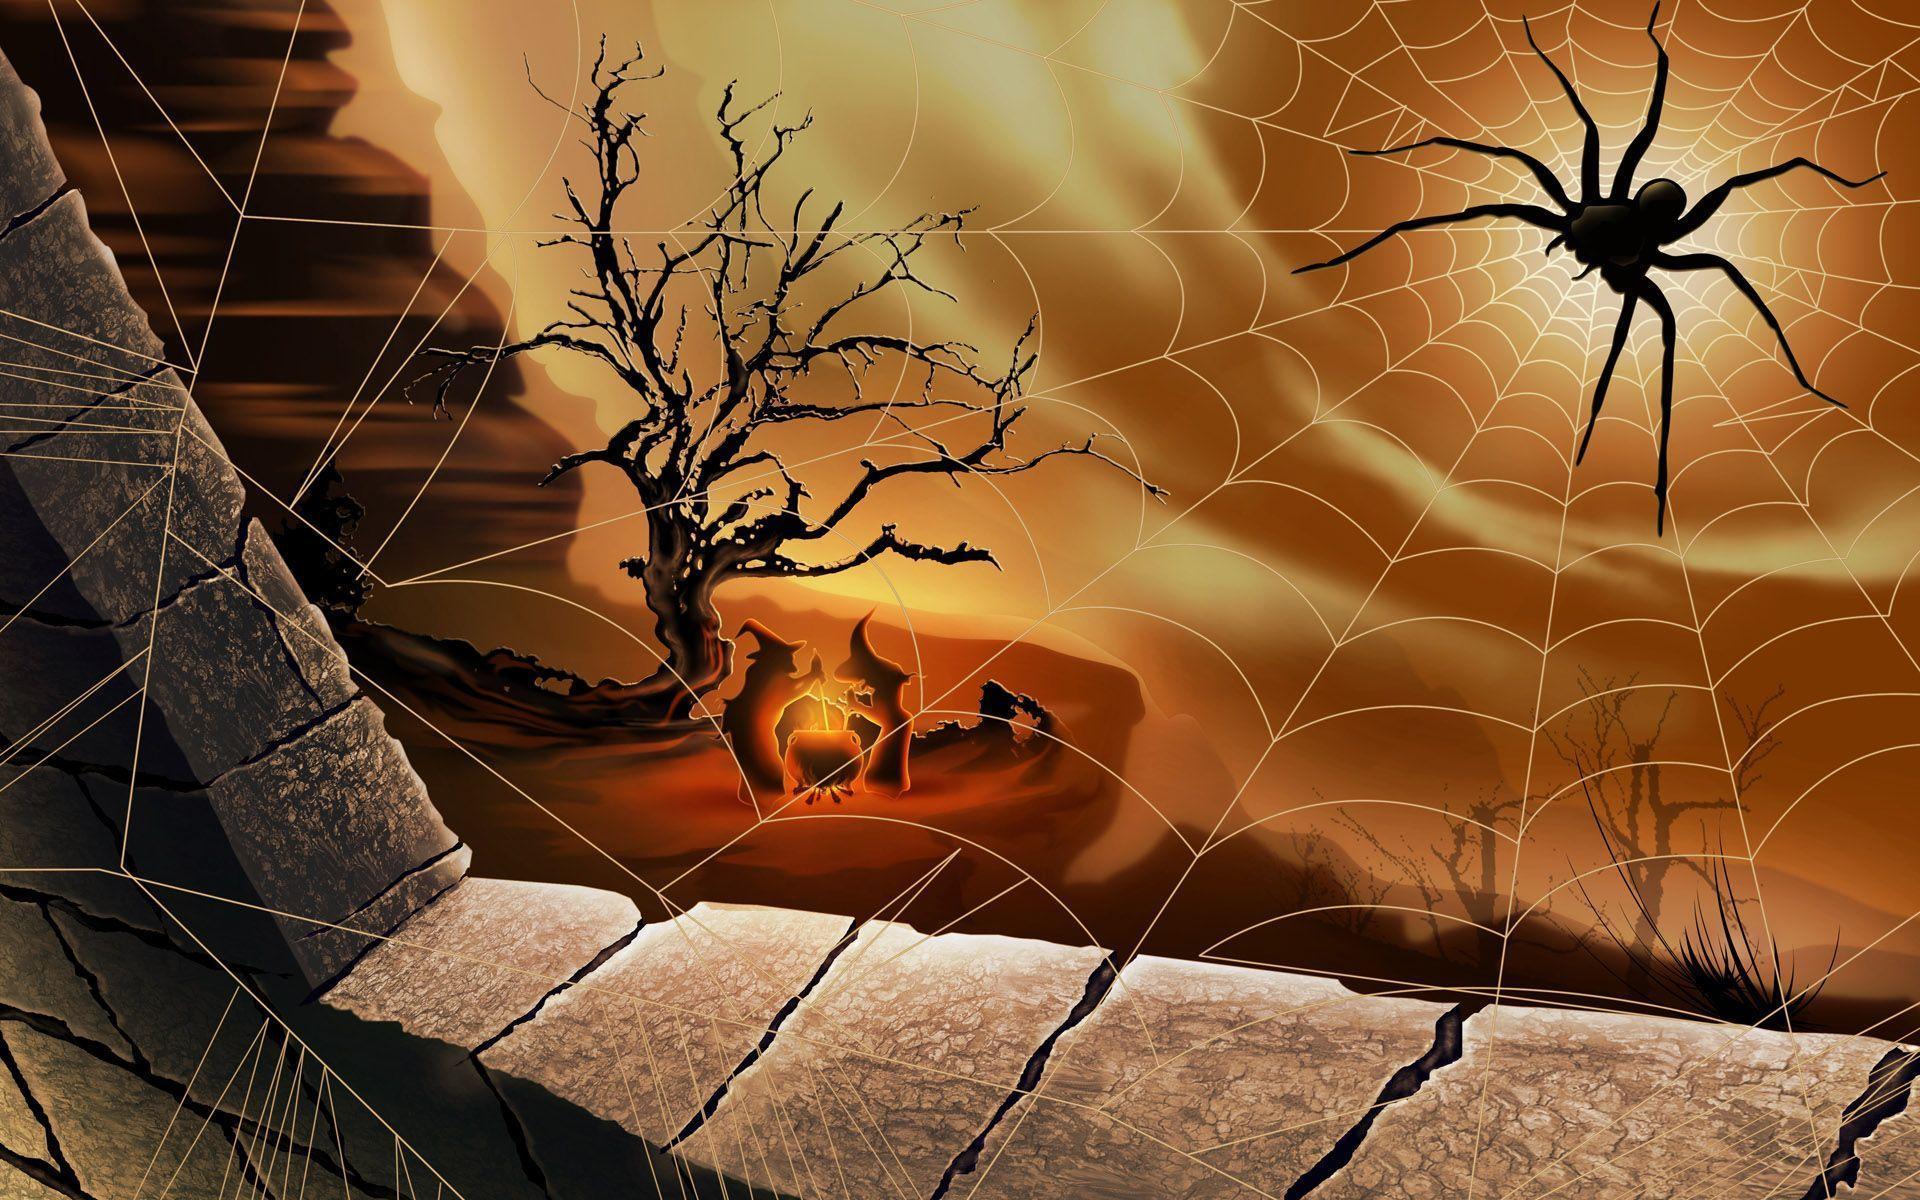 Halloween Spider Net. Smash Wallpaper source for top